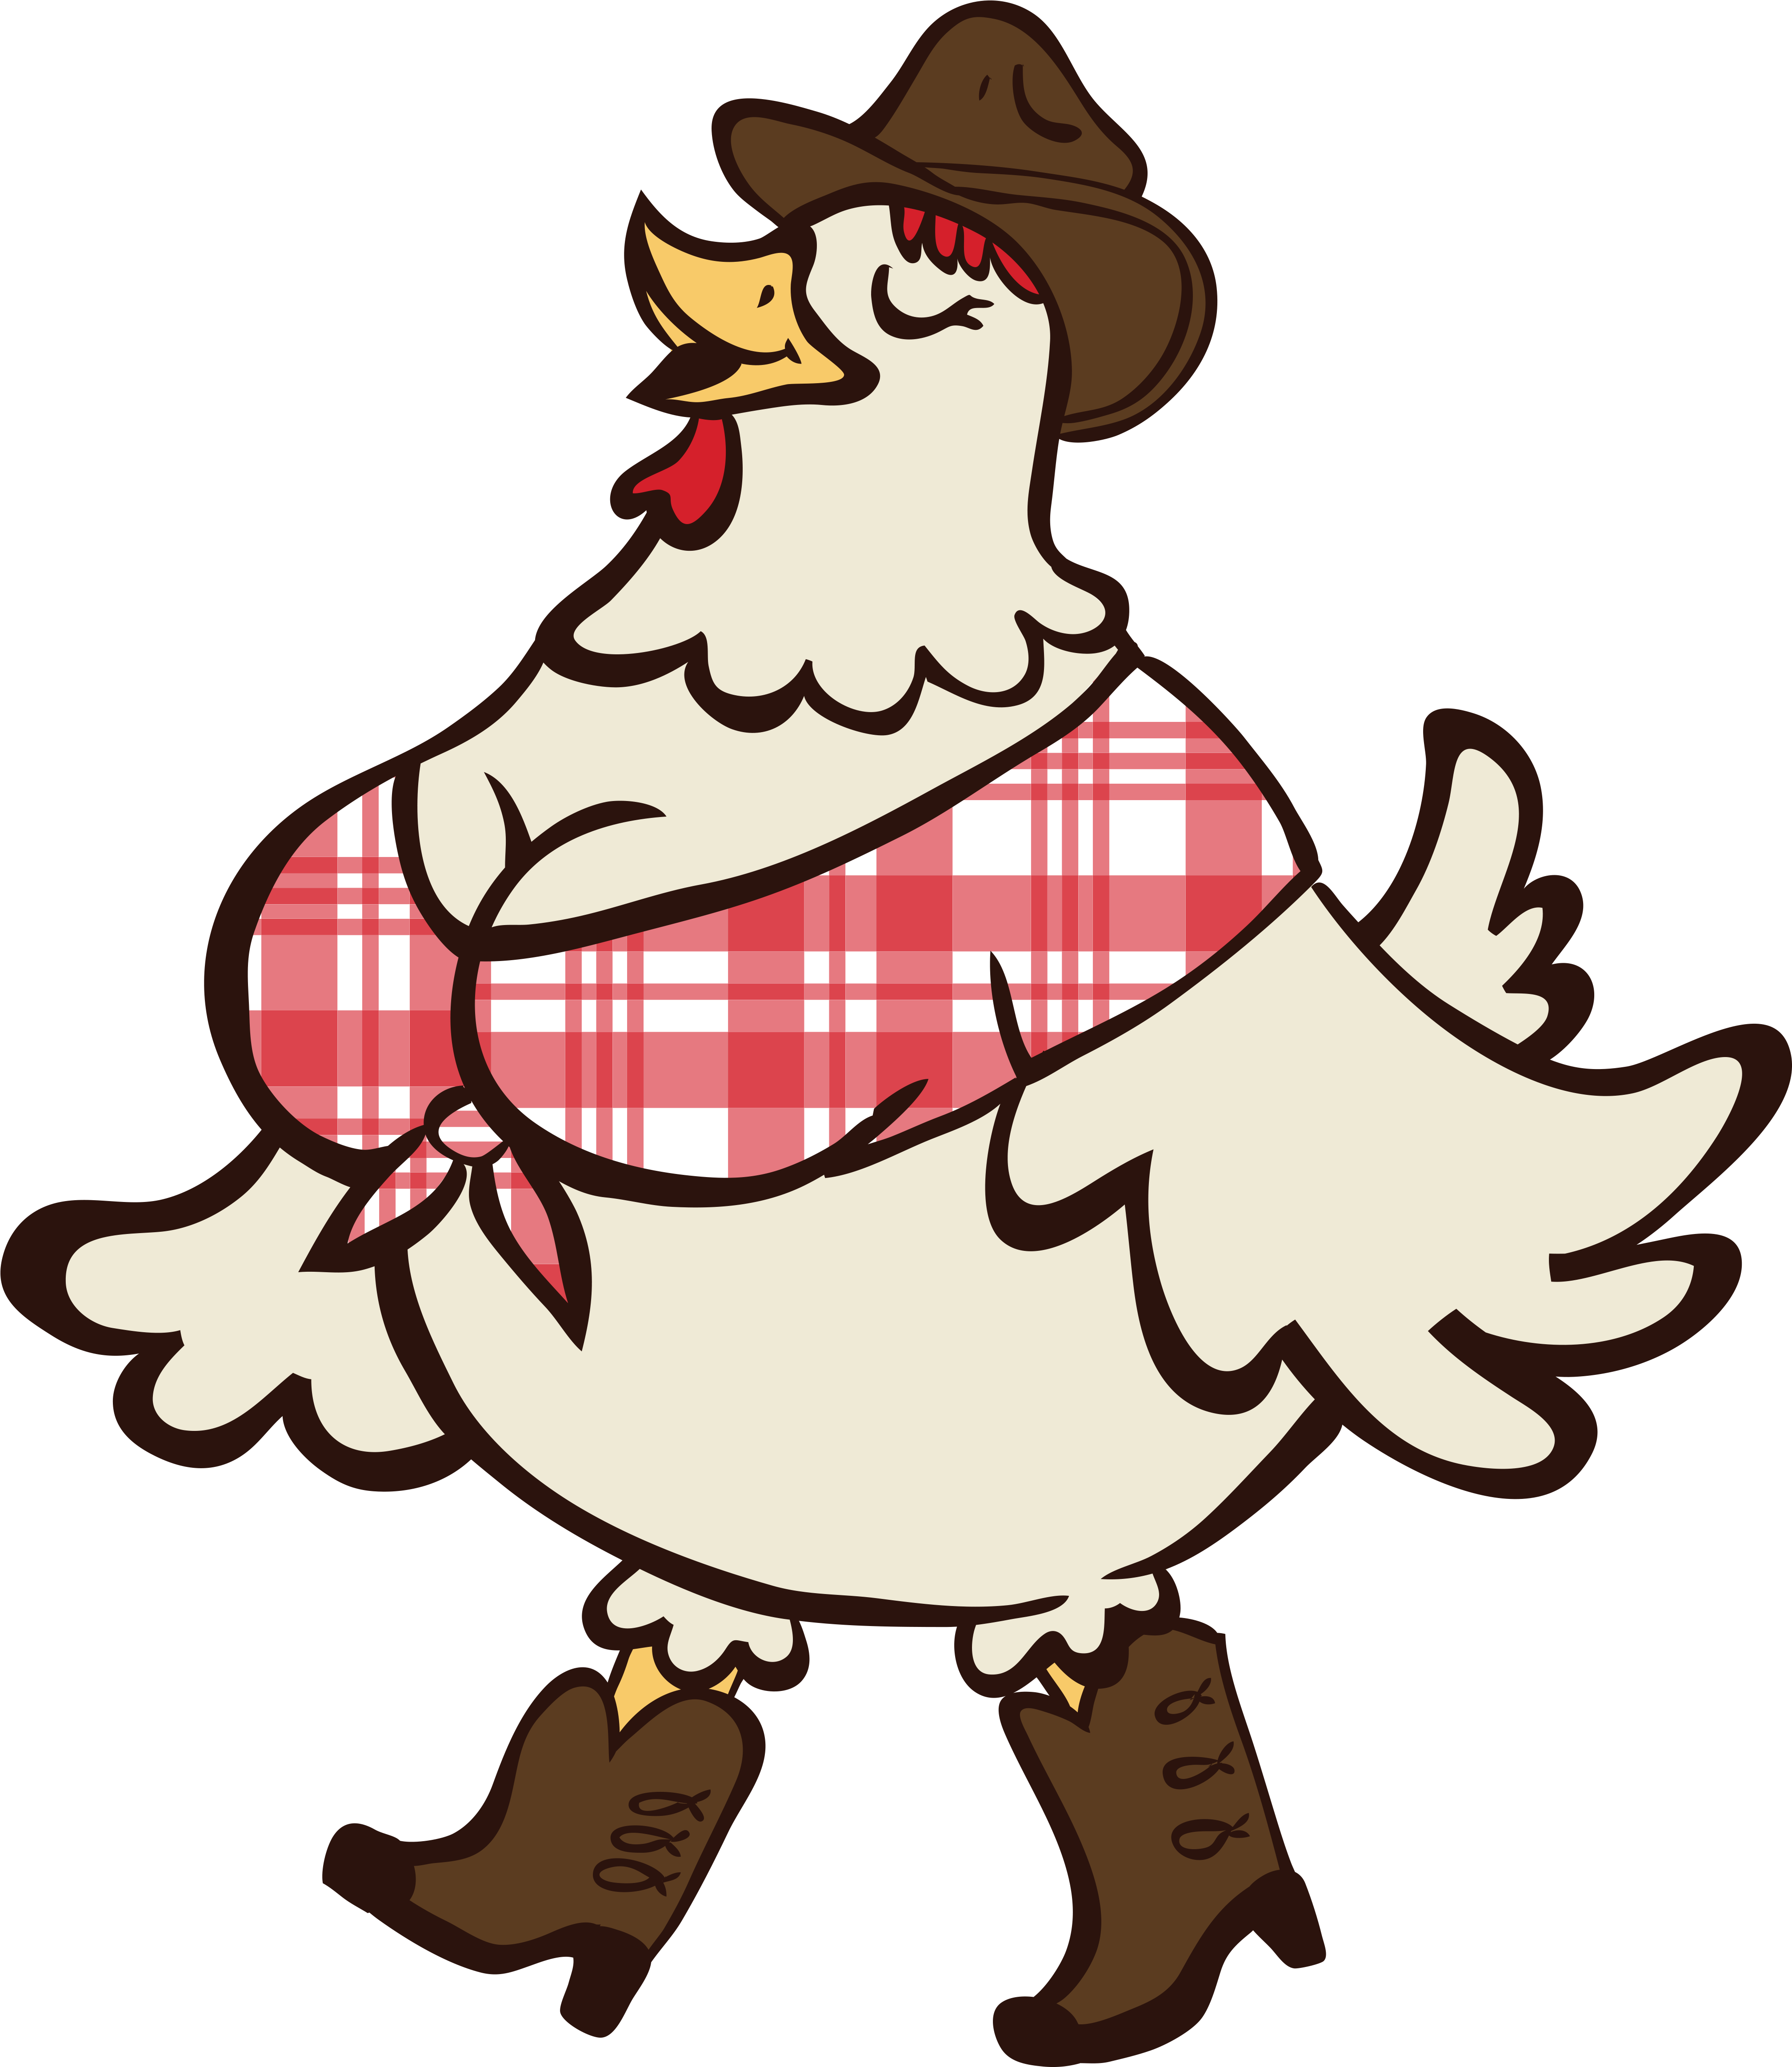 A Dolly Parton - Fat Hen Cartoon (4380x5050)